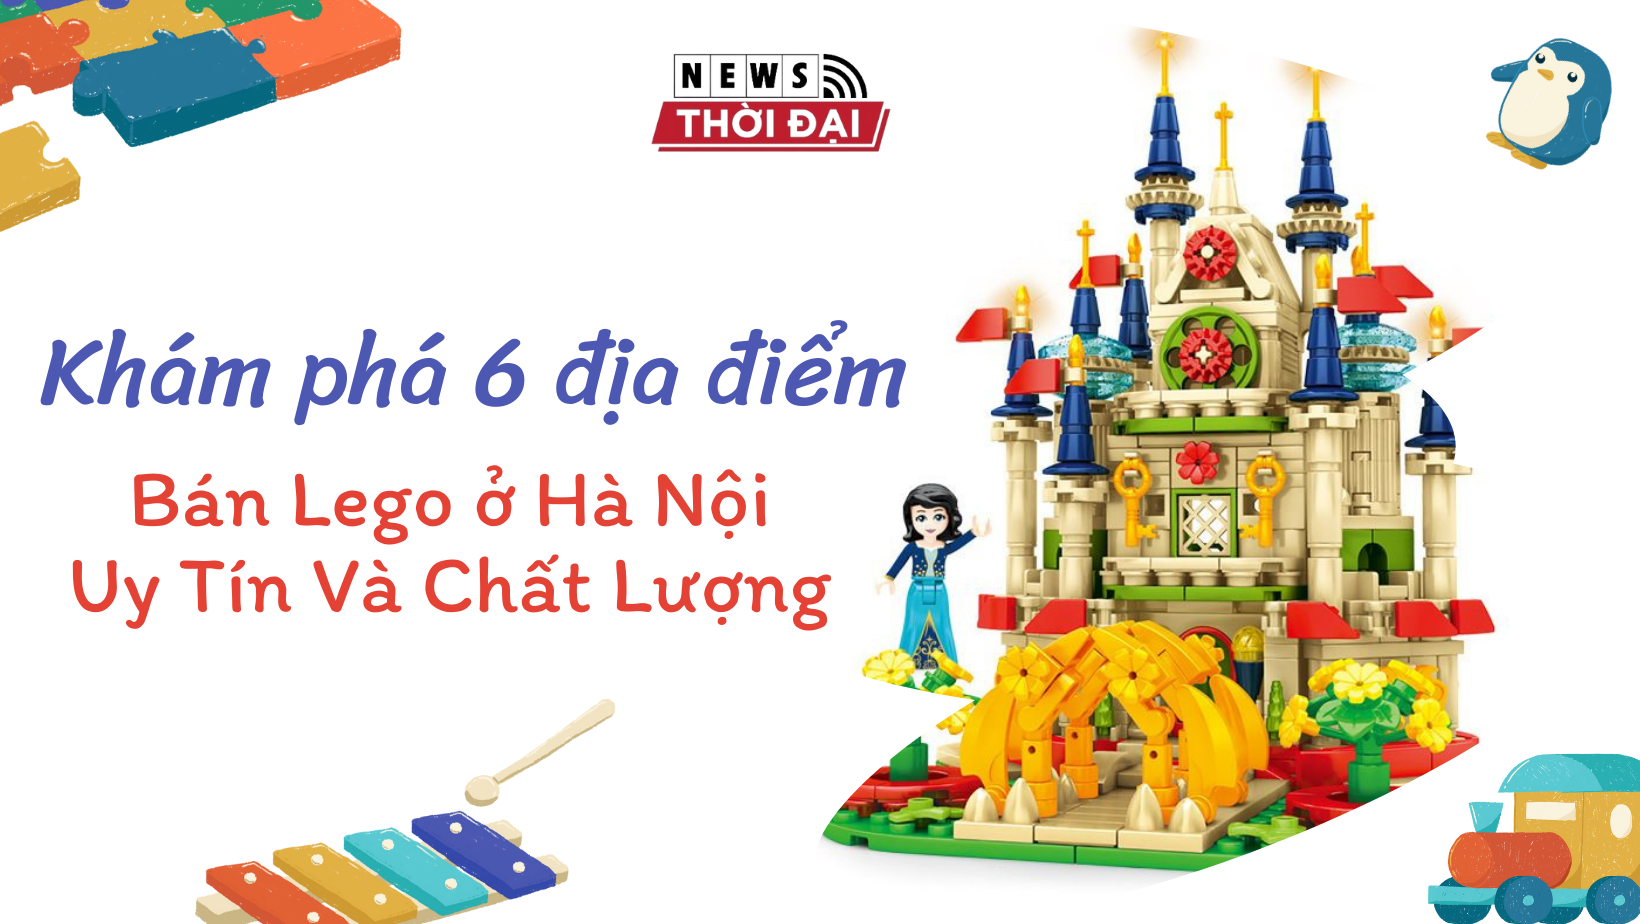 Khám phá 5 địa điểm bán Lego ở Hà Nội Uy Tín Và Chất Lượng